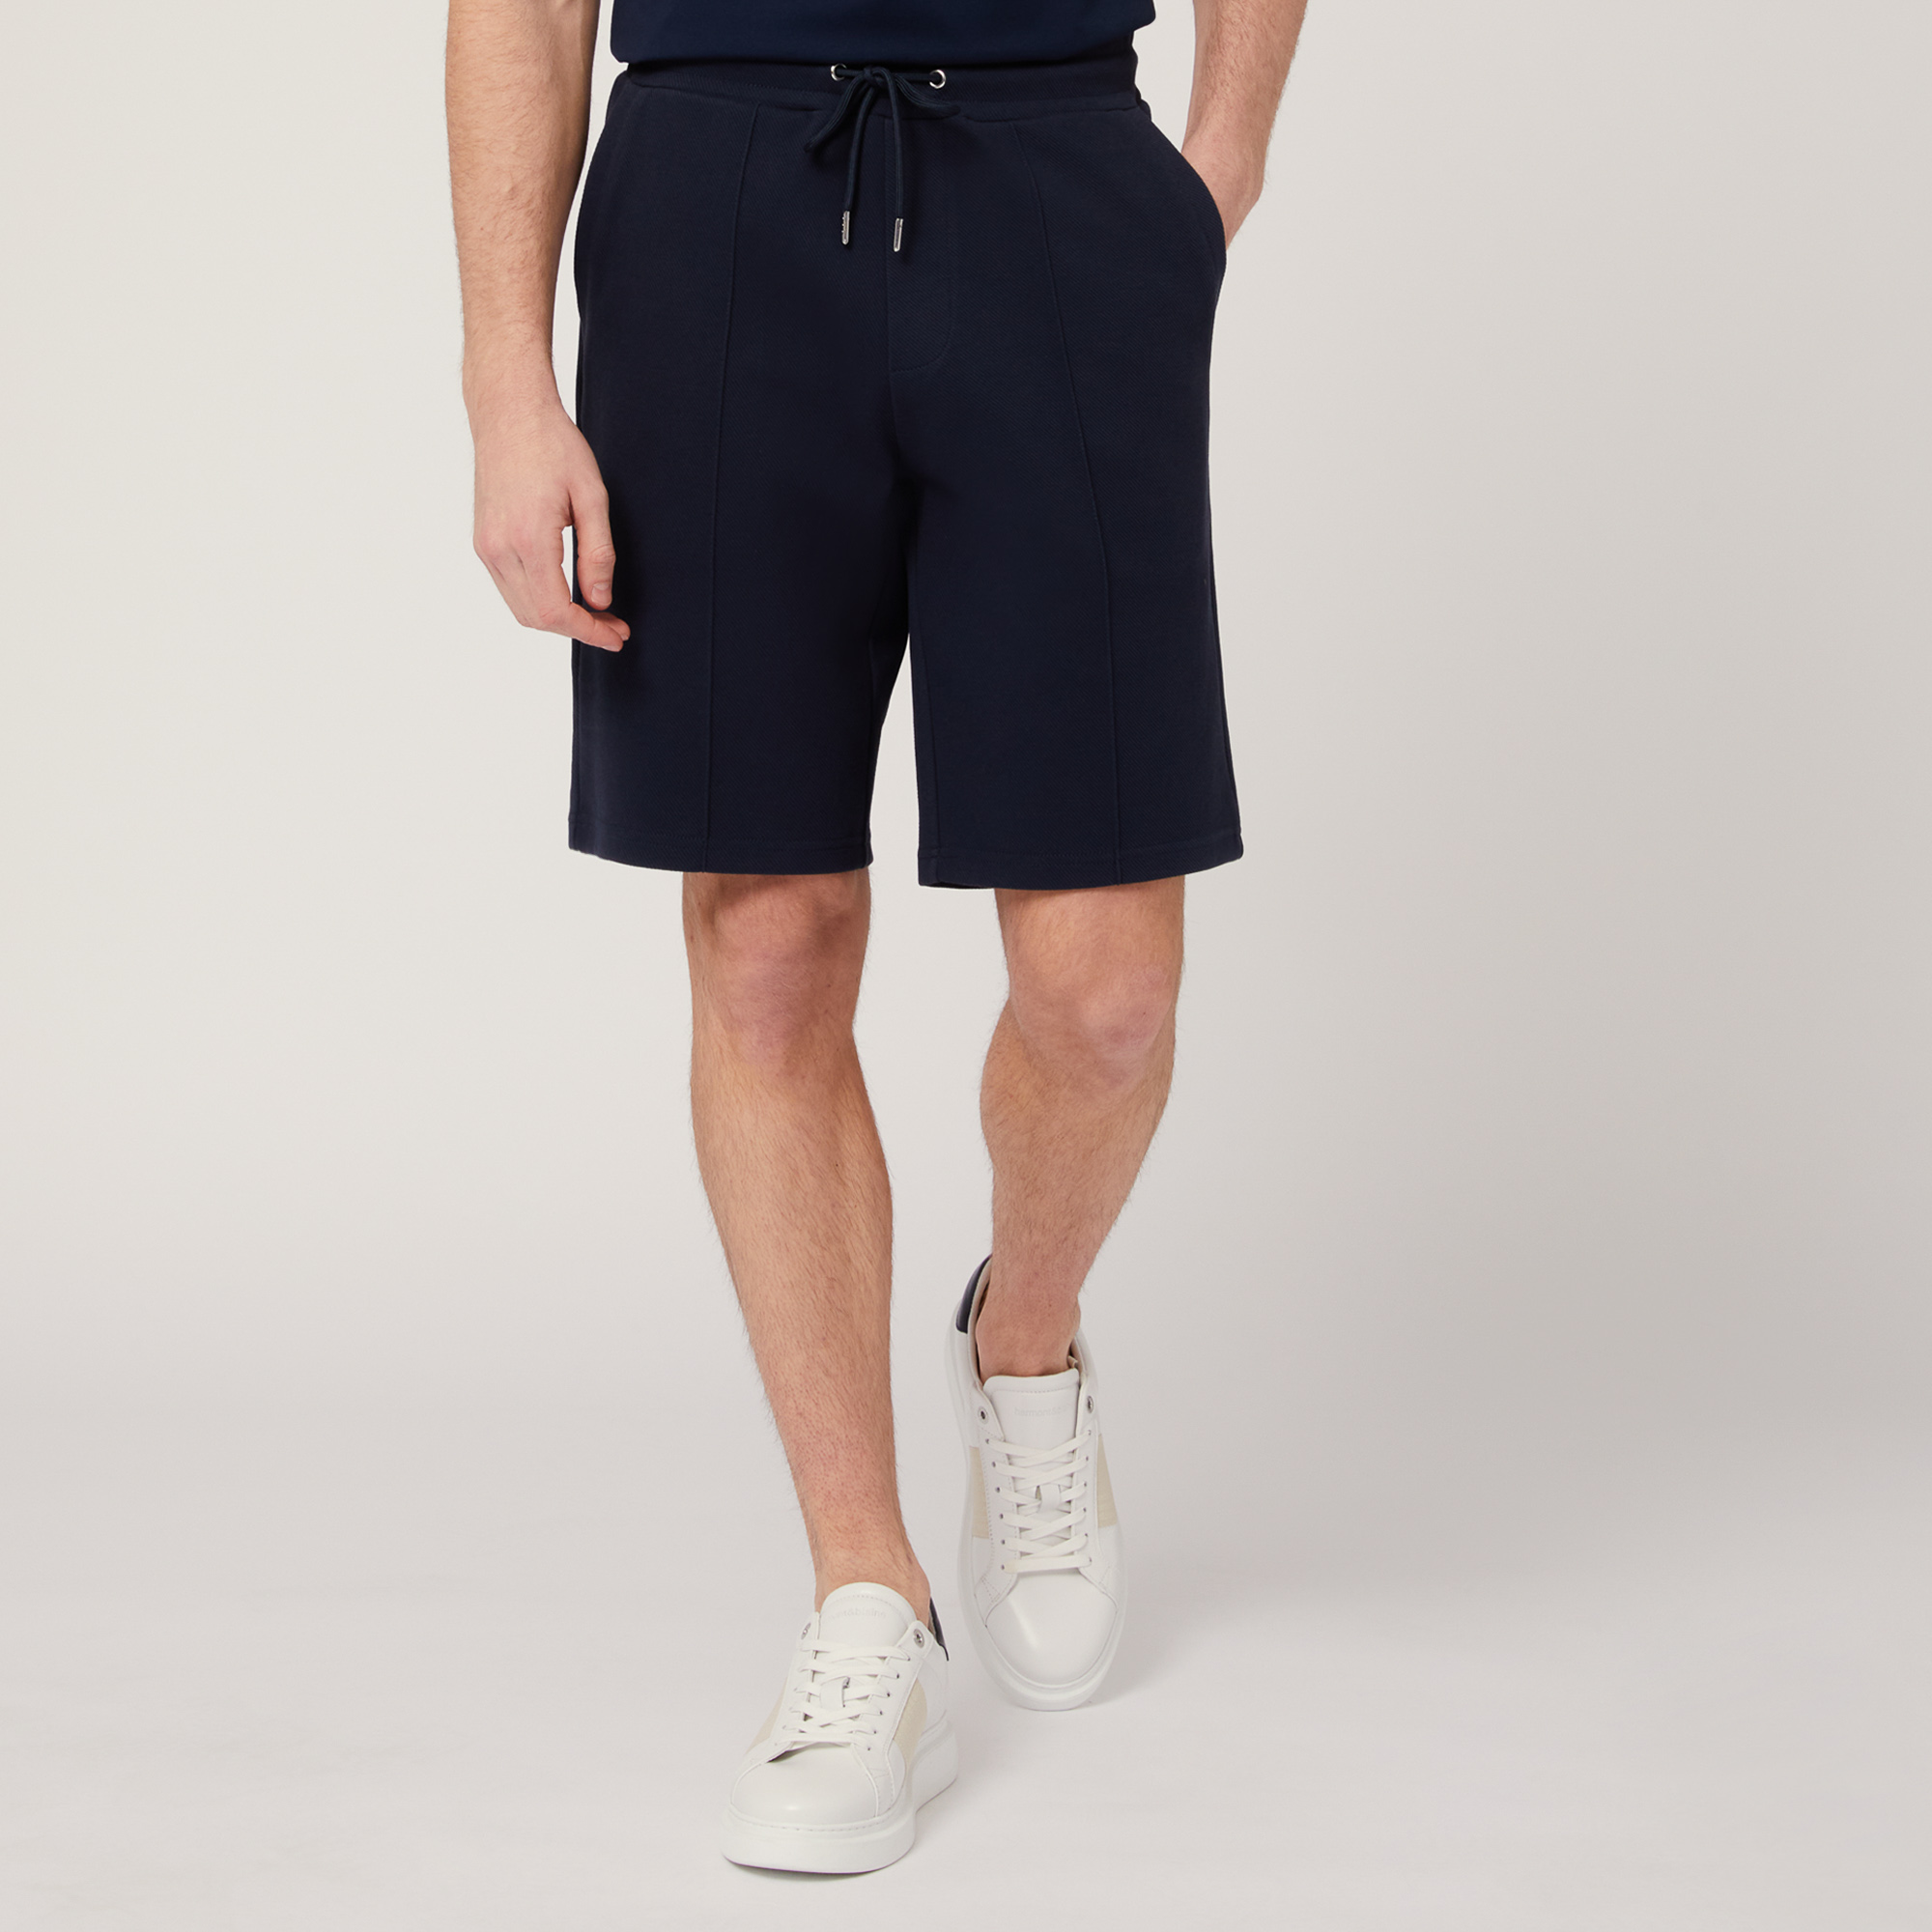 Pantalón corto de algodón elástico con bolsillo trasero, Azul, large